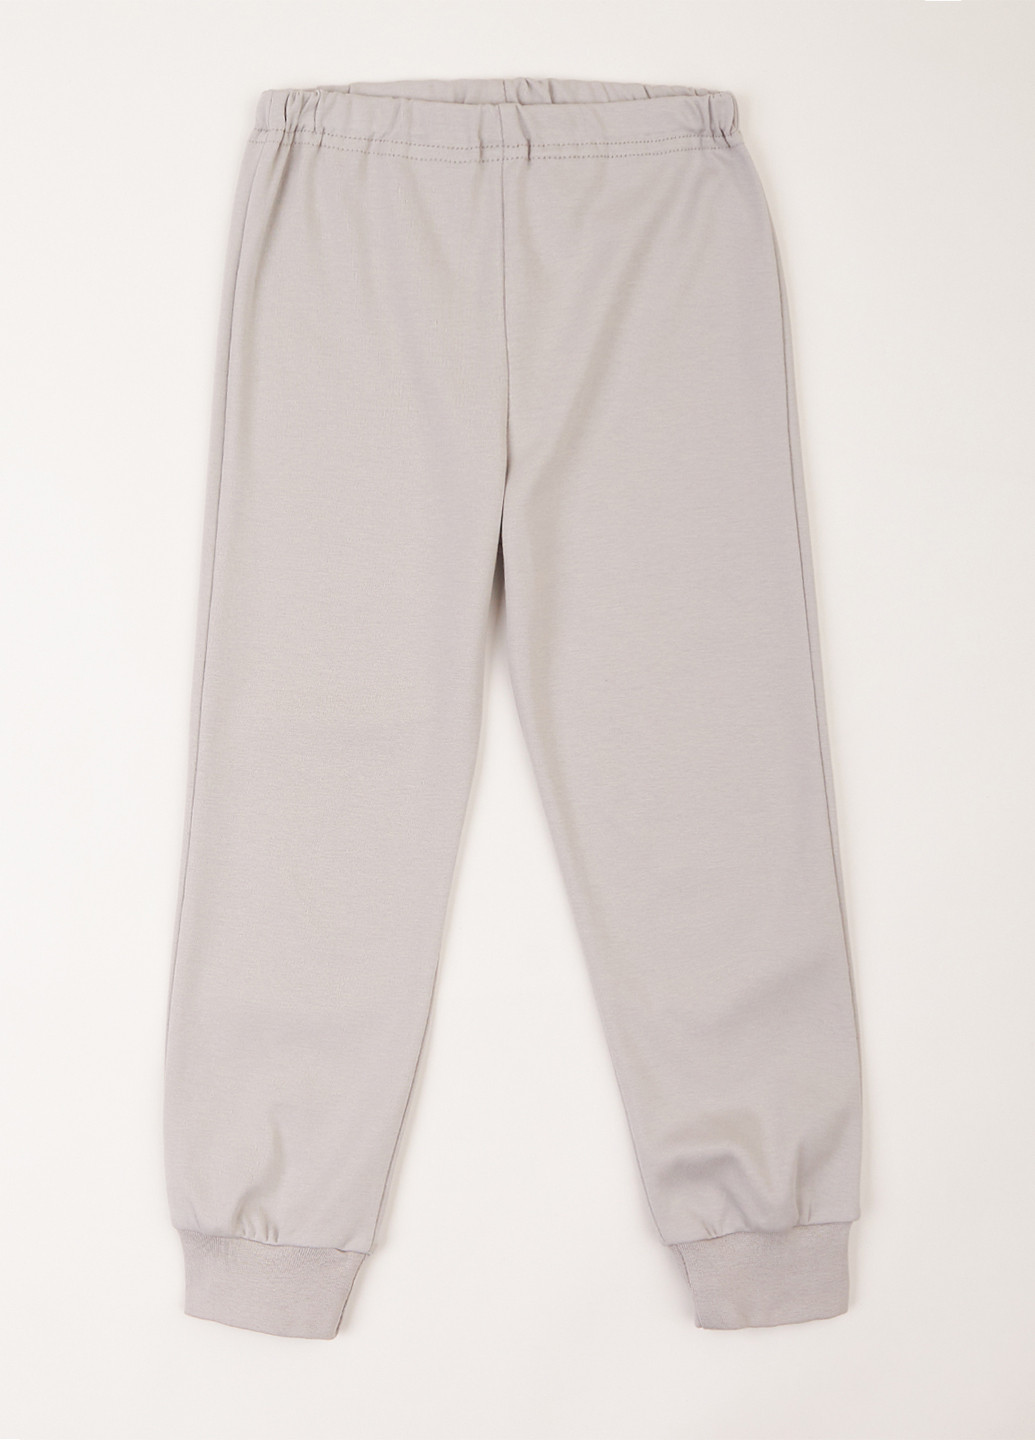 Серая всесезон пижама (свитшот, брюки) свитшот + брюки Ляля